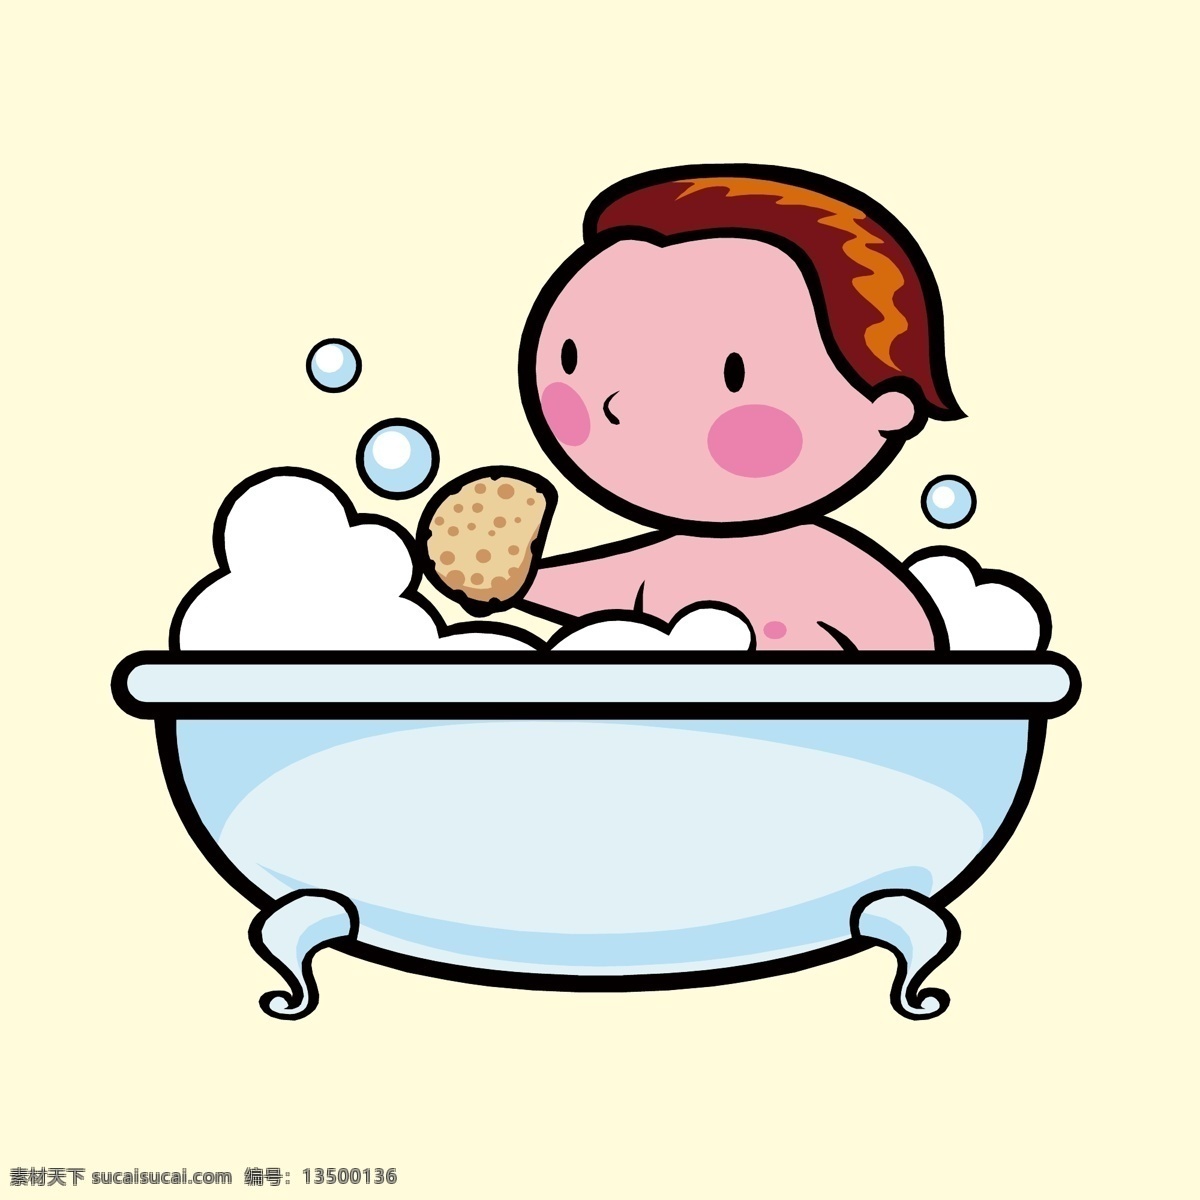 宝宝洗浴 婴儿洗澡 婴儿洗浴 宝宝洗澡 浴缸里的宝宝 浴盆里的宝宝 卡通宝宝 人物插画设计 男性人物设计 女性人物设计 儿童人物设计 矢量卡通人物